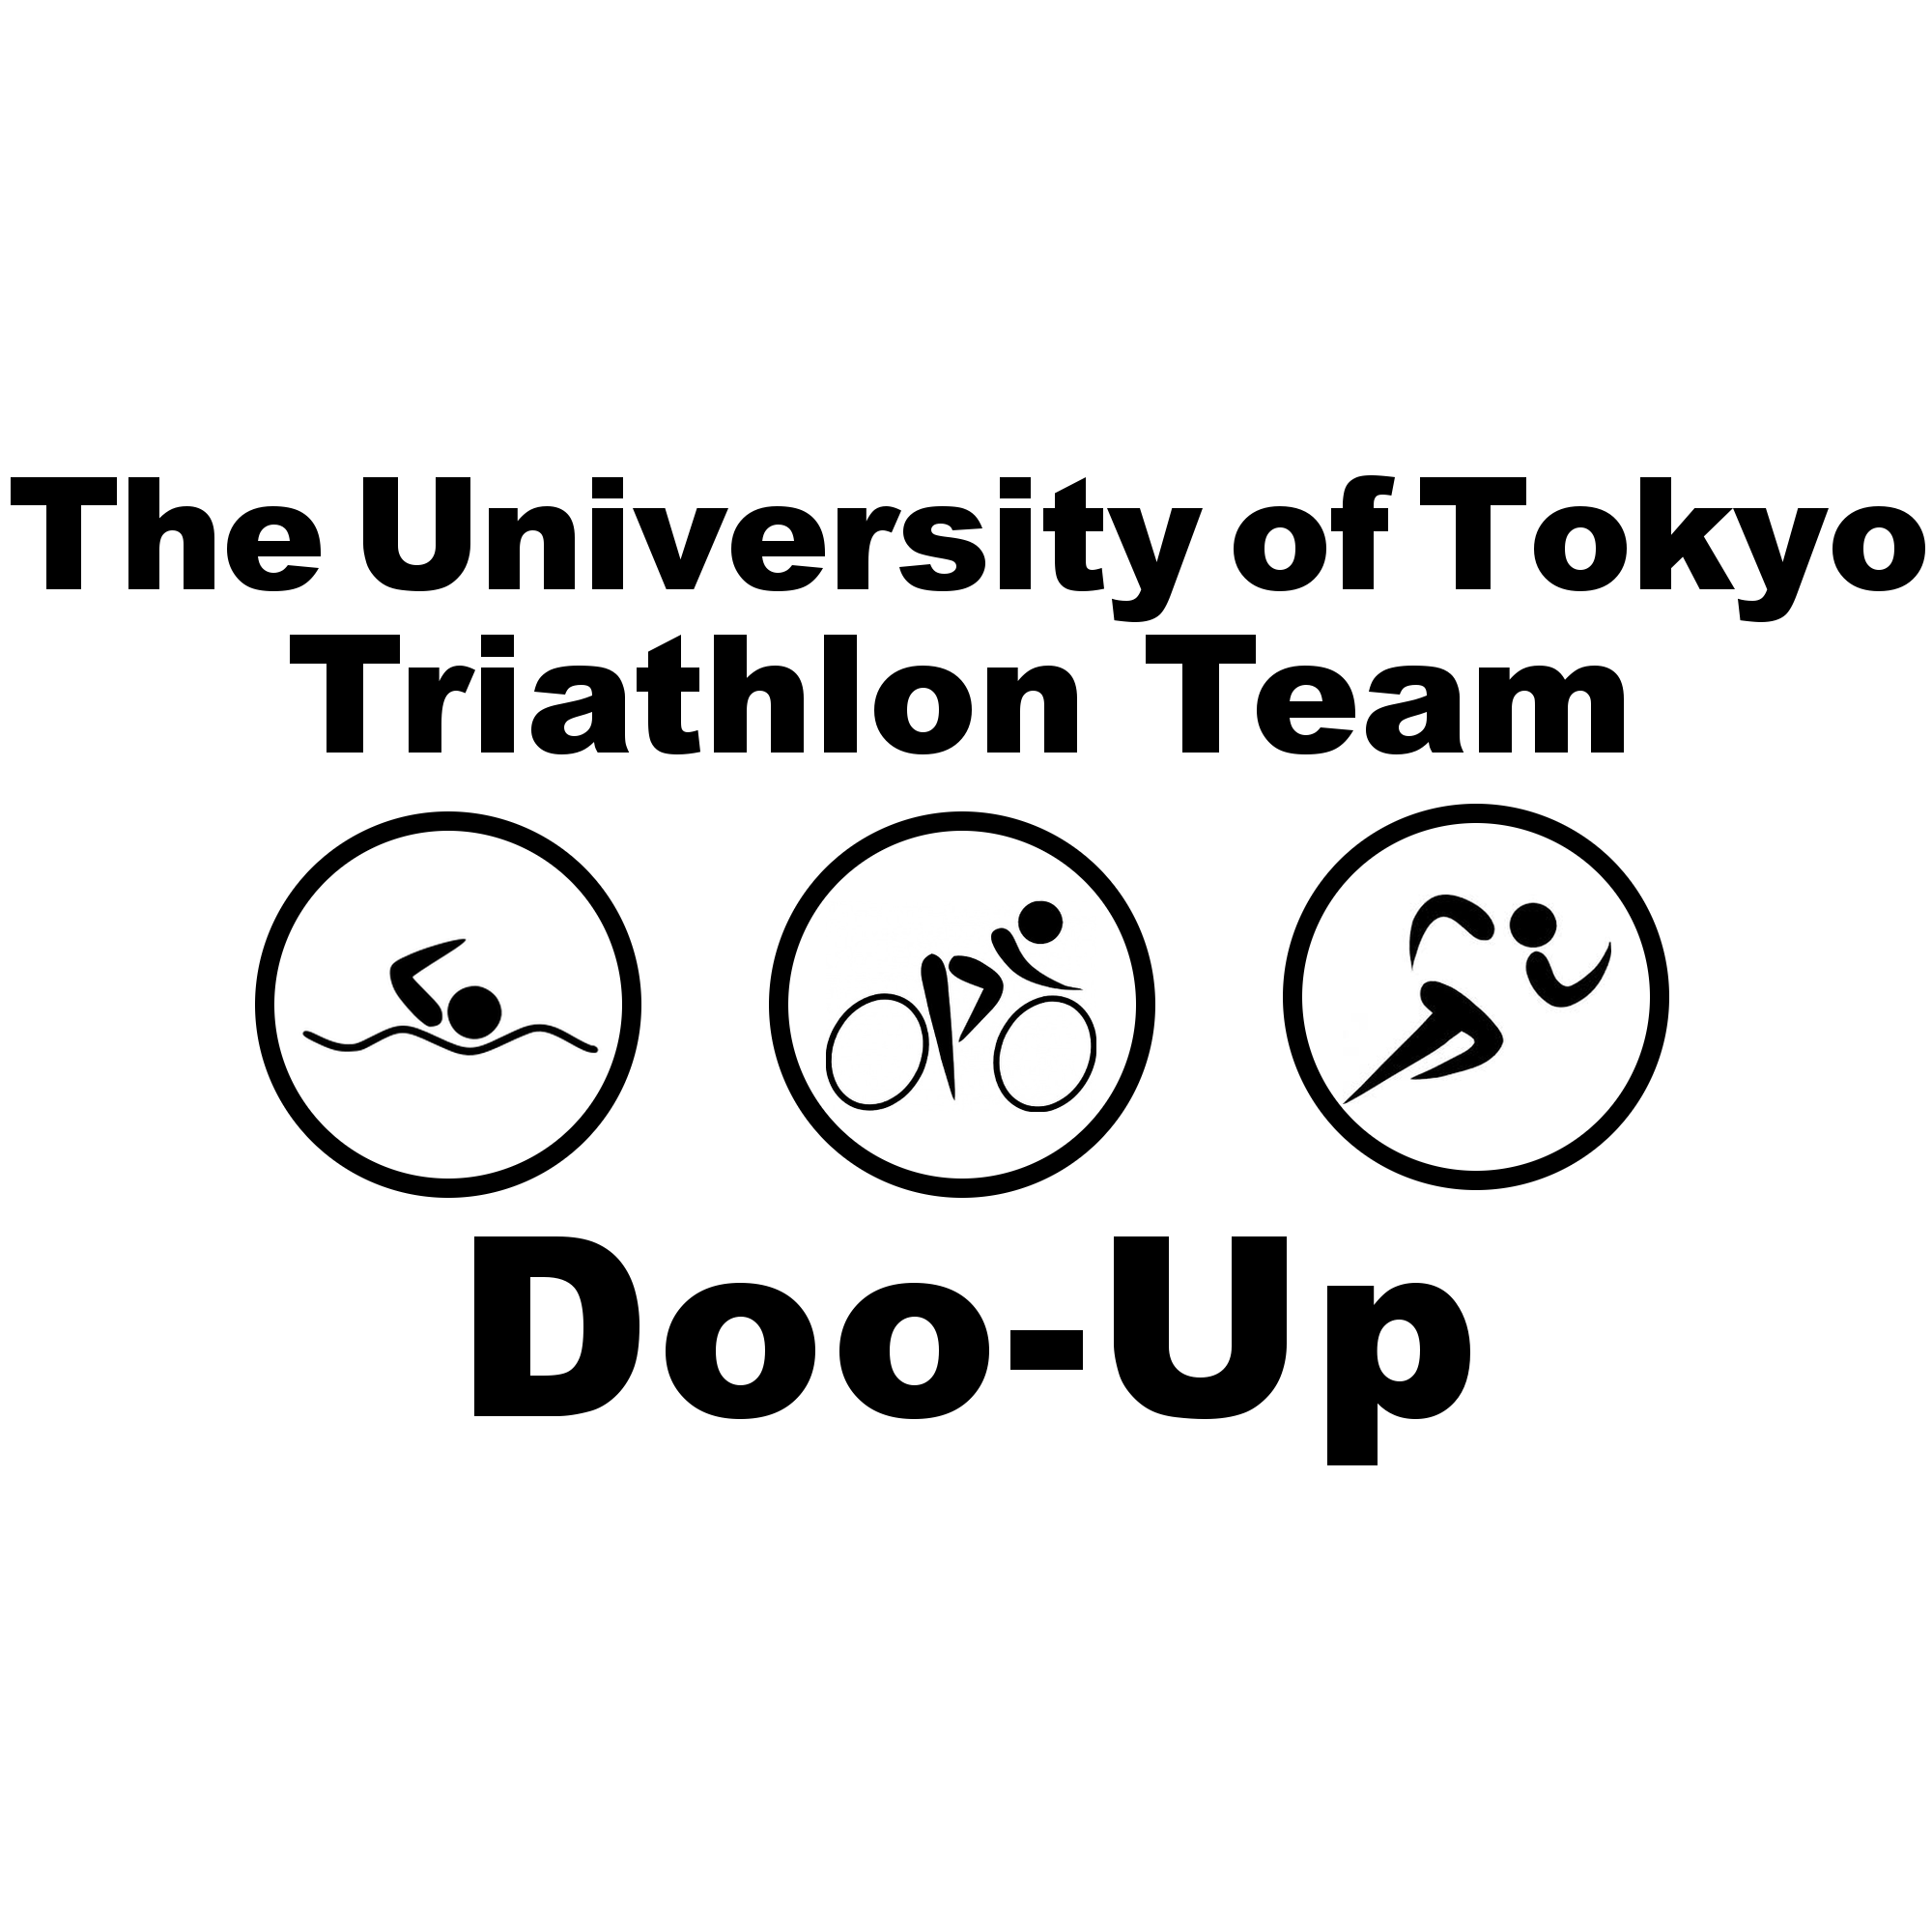 東京大学唯一のトライアスロンチームDoo-Upです！ 新入生大募集中！！興味を持たれた方は doouptriathlon@gmail.com に気軽に連絡ください！！他大からの加入もお待ちしています。

アメブロでレースレポートを更新しています！！↓